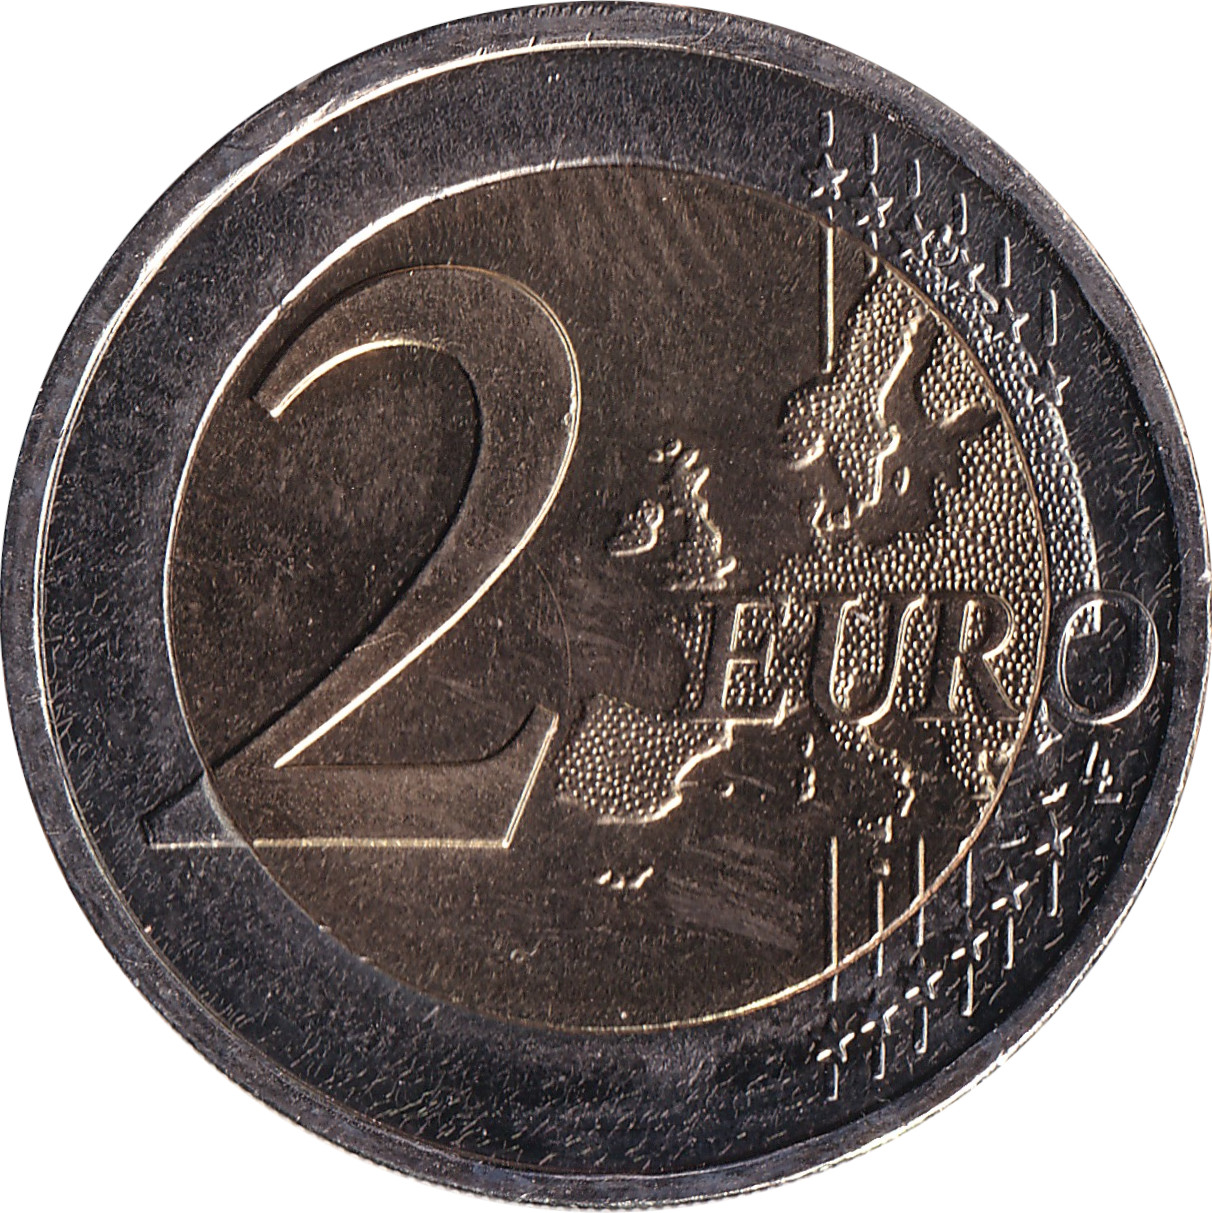 2 euro - Kostís Palamás